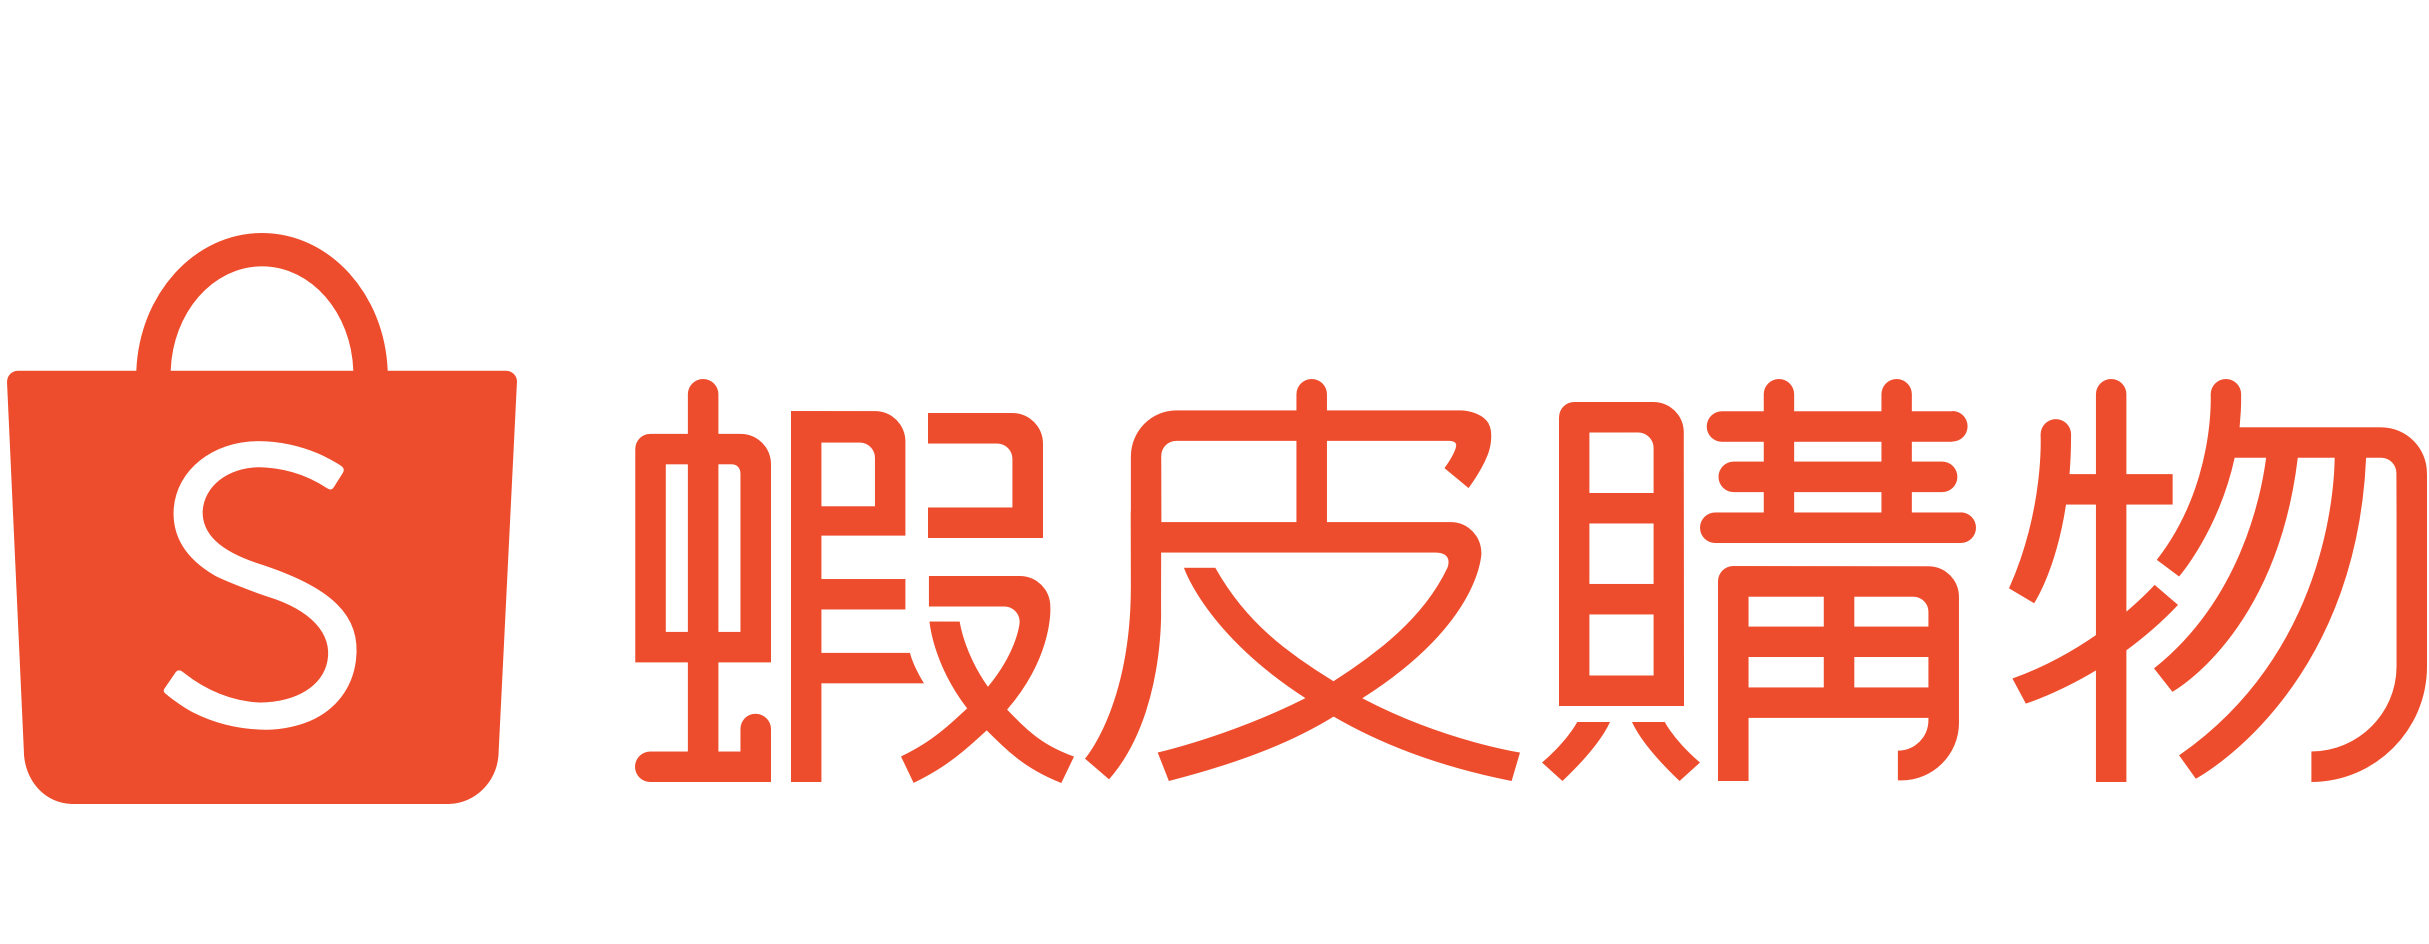 shopee chinese emblem logo 40481